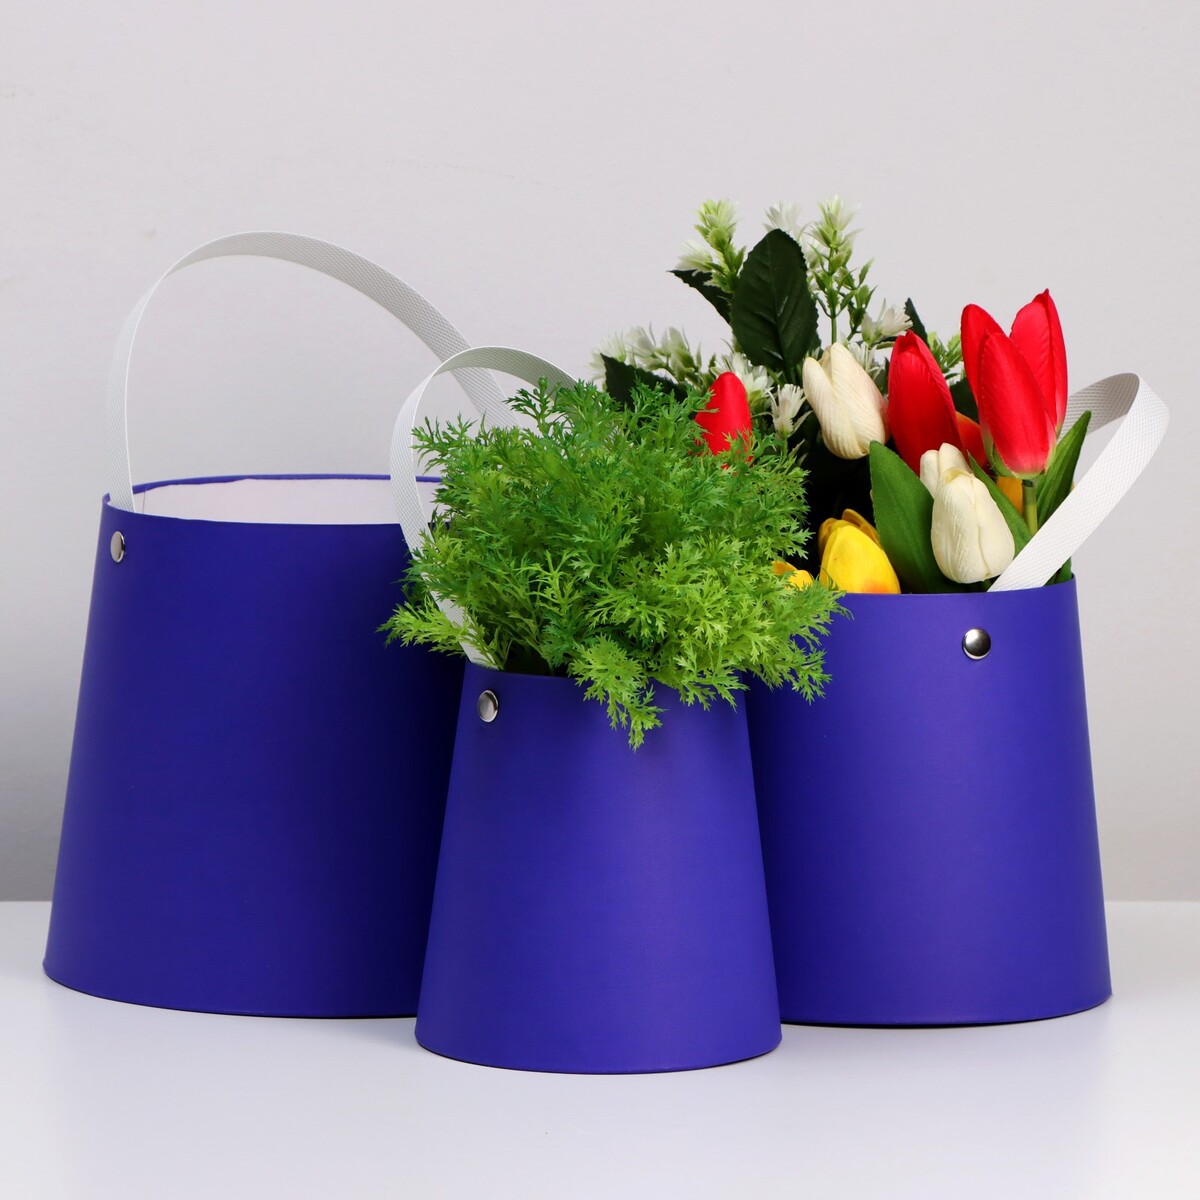 Набор коробок 3 в 1 обратный конус фиолетовый без крышек с ручкой 11-14 х 14-16 х 16-18 см